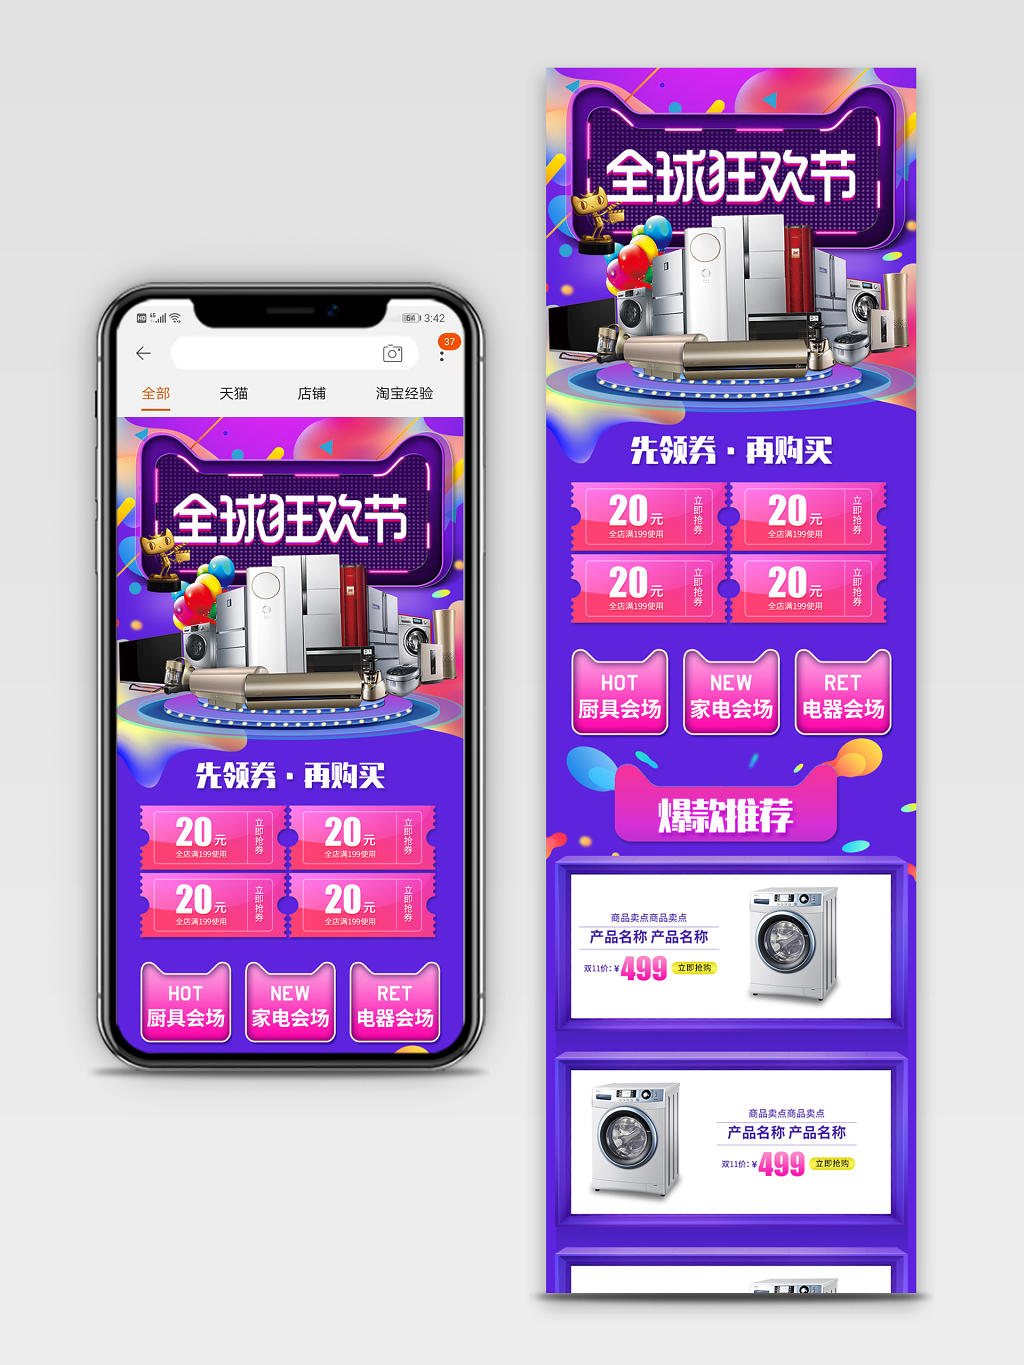 淘宝电商天猫双11双十一全球狂欢节2019家电厨具电器会场紫